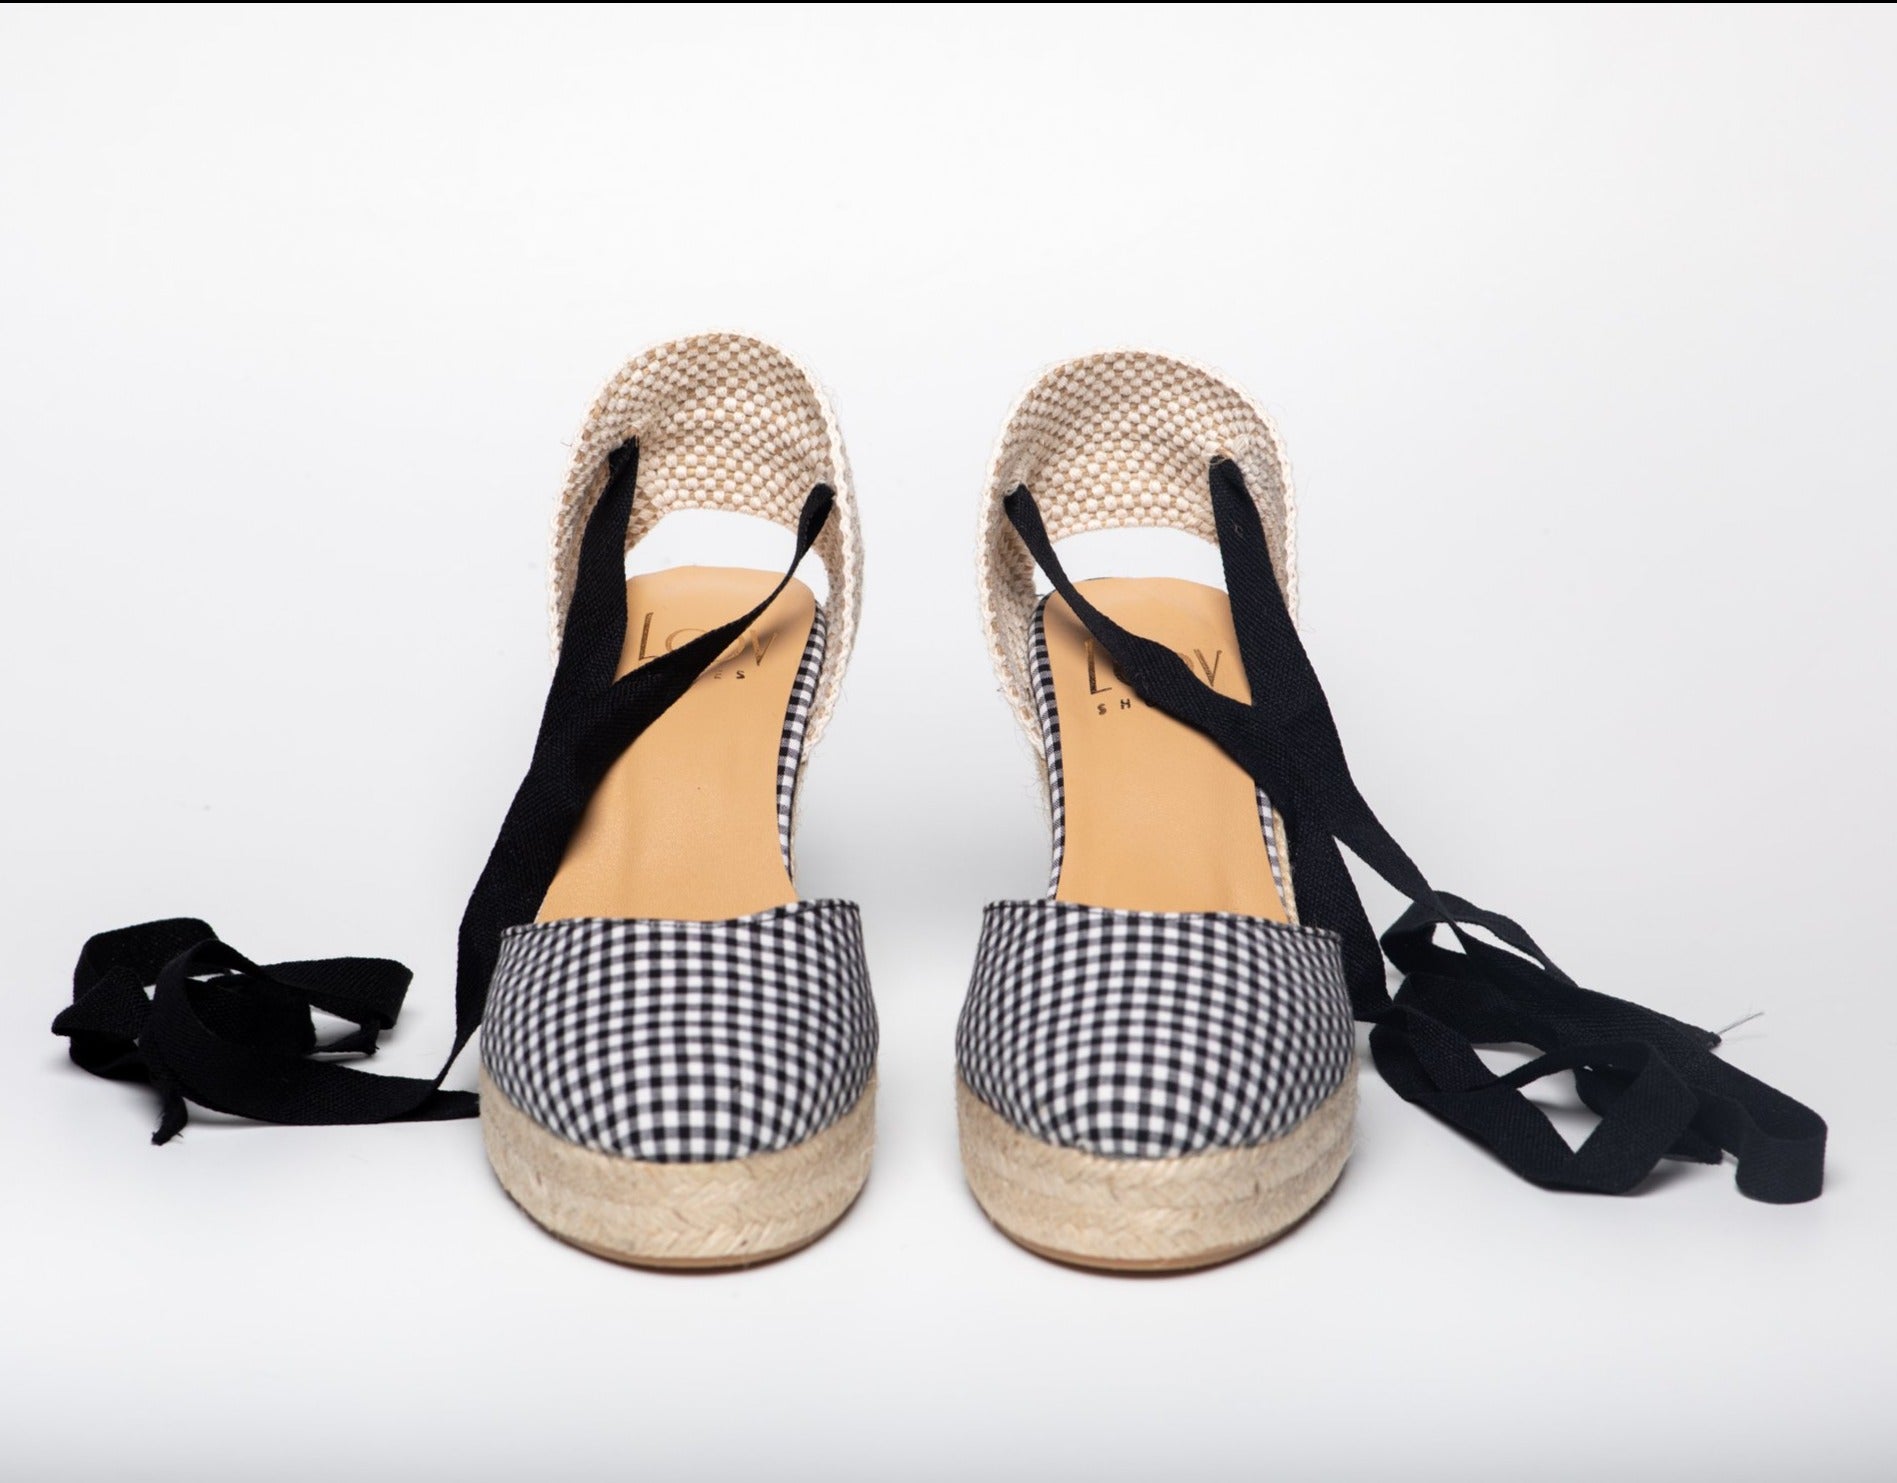 Cuña Cristina Vichy-cuñas de esparto-cuña, esparto, vichy, zapatos de color negro-Loovshoes